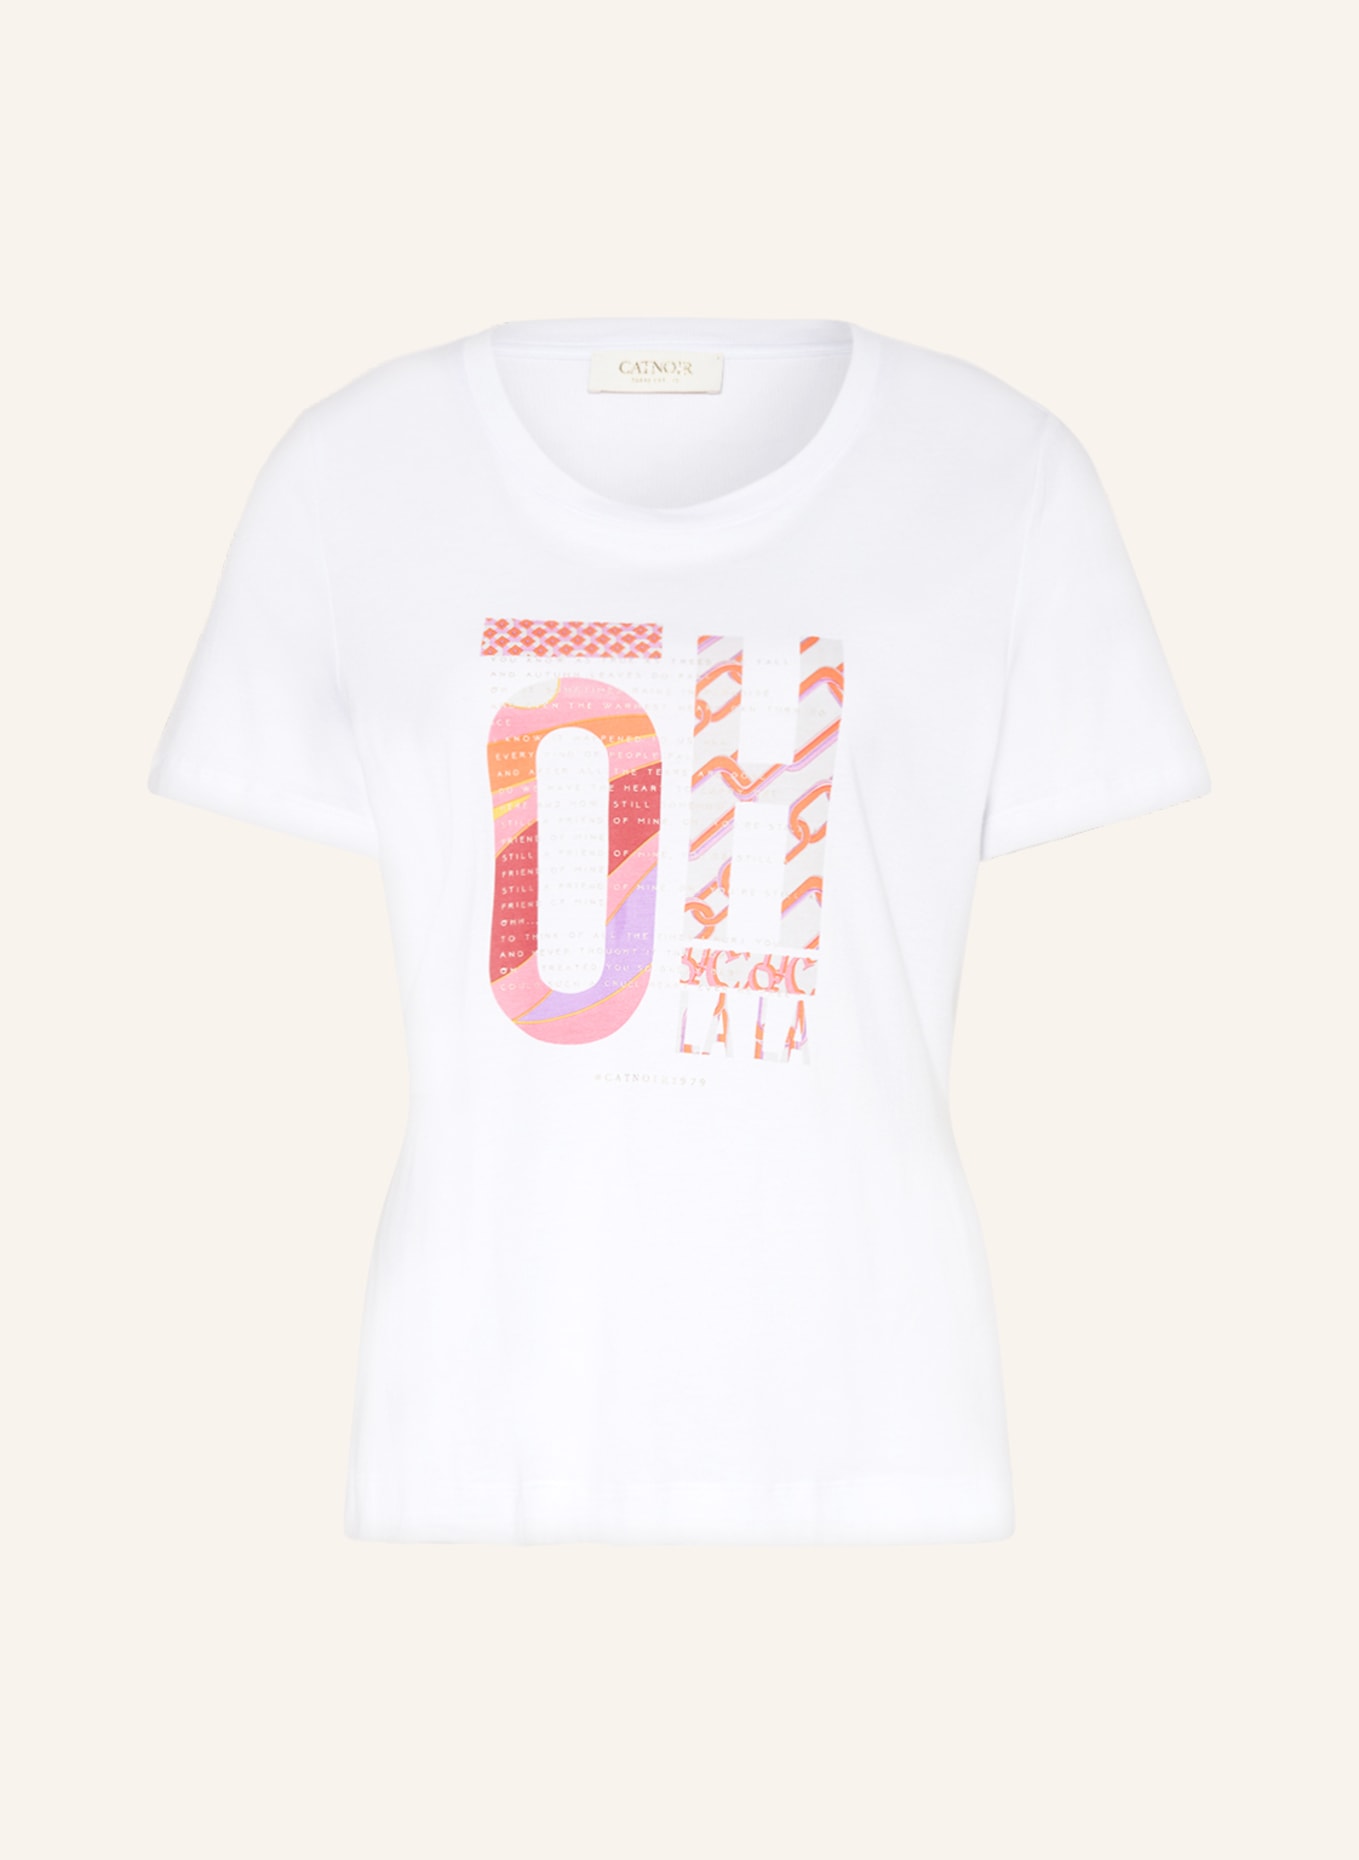 CATNOIR T-shirt, Color: WHITE (Image 1)